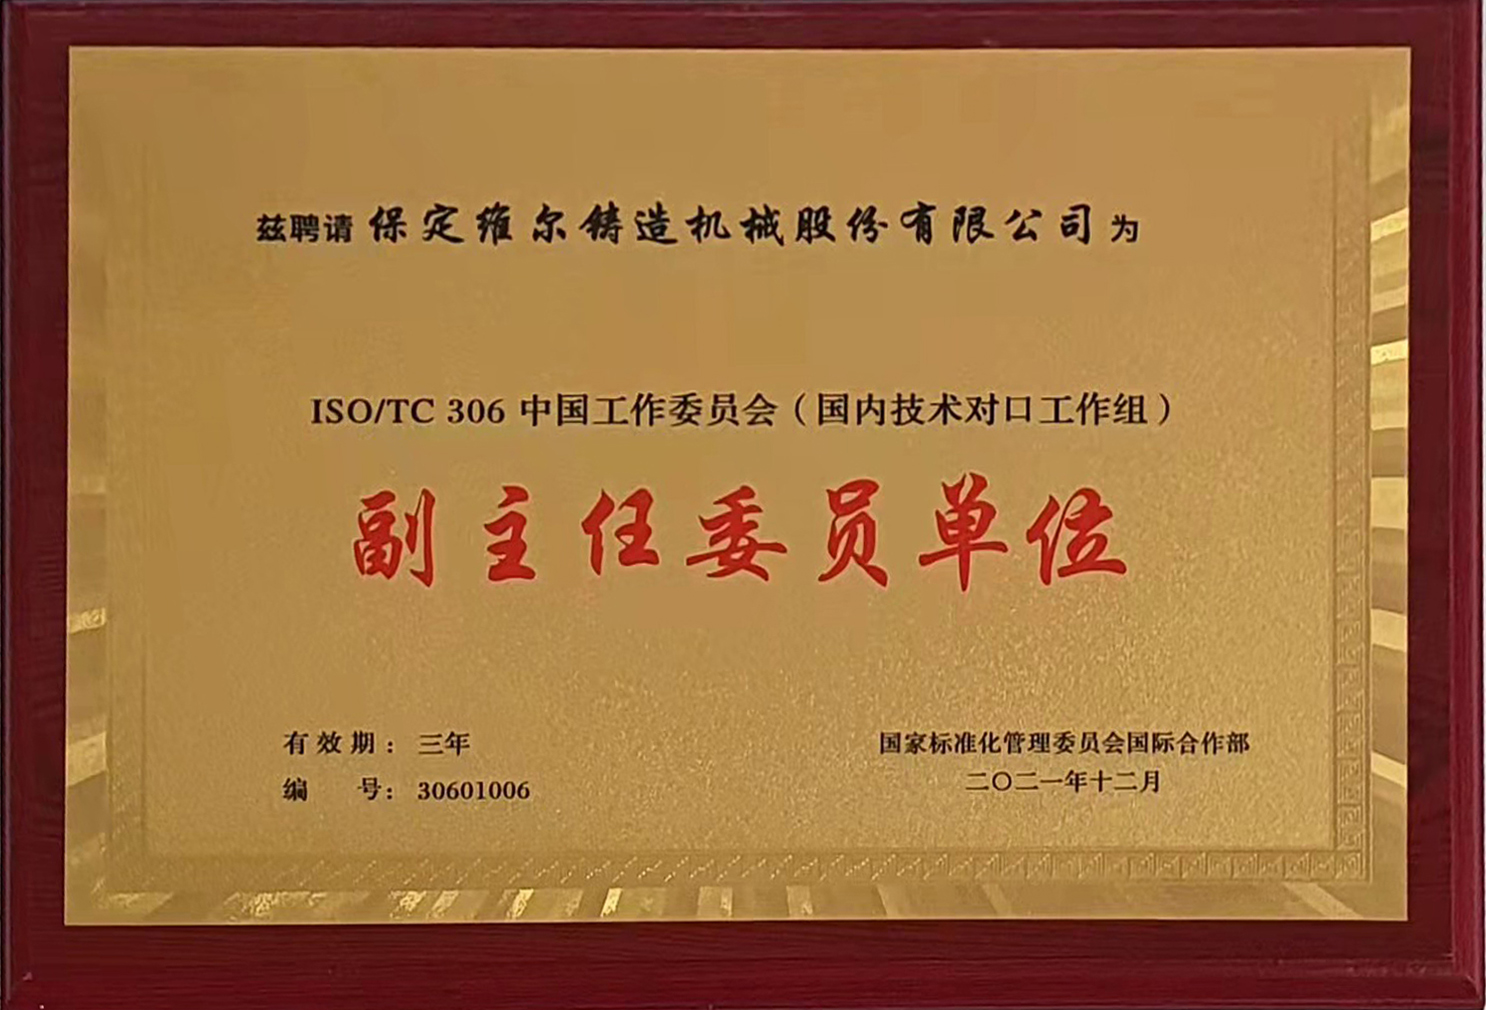 國際標準化組織鑄造機械技術委員會 (ISO/TC306)中國工作委員會副主任委員單位